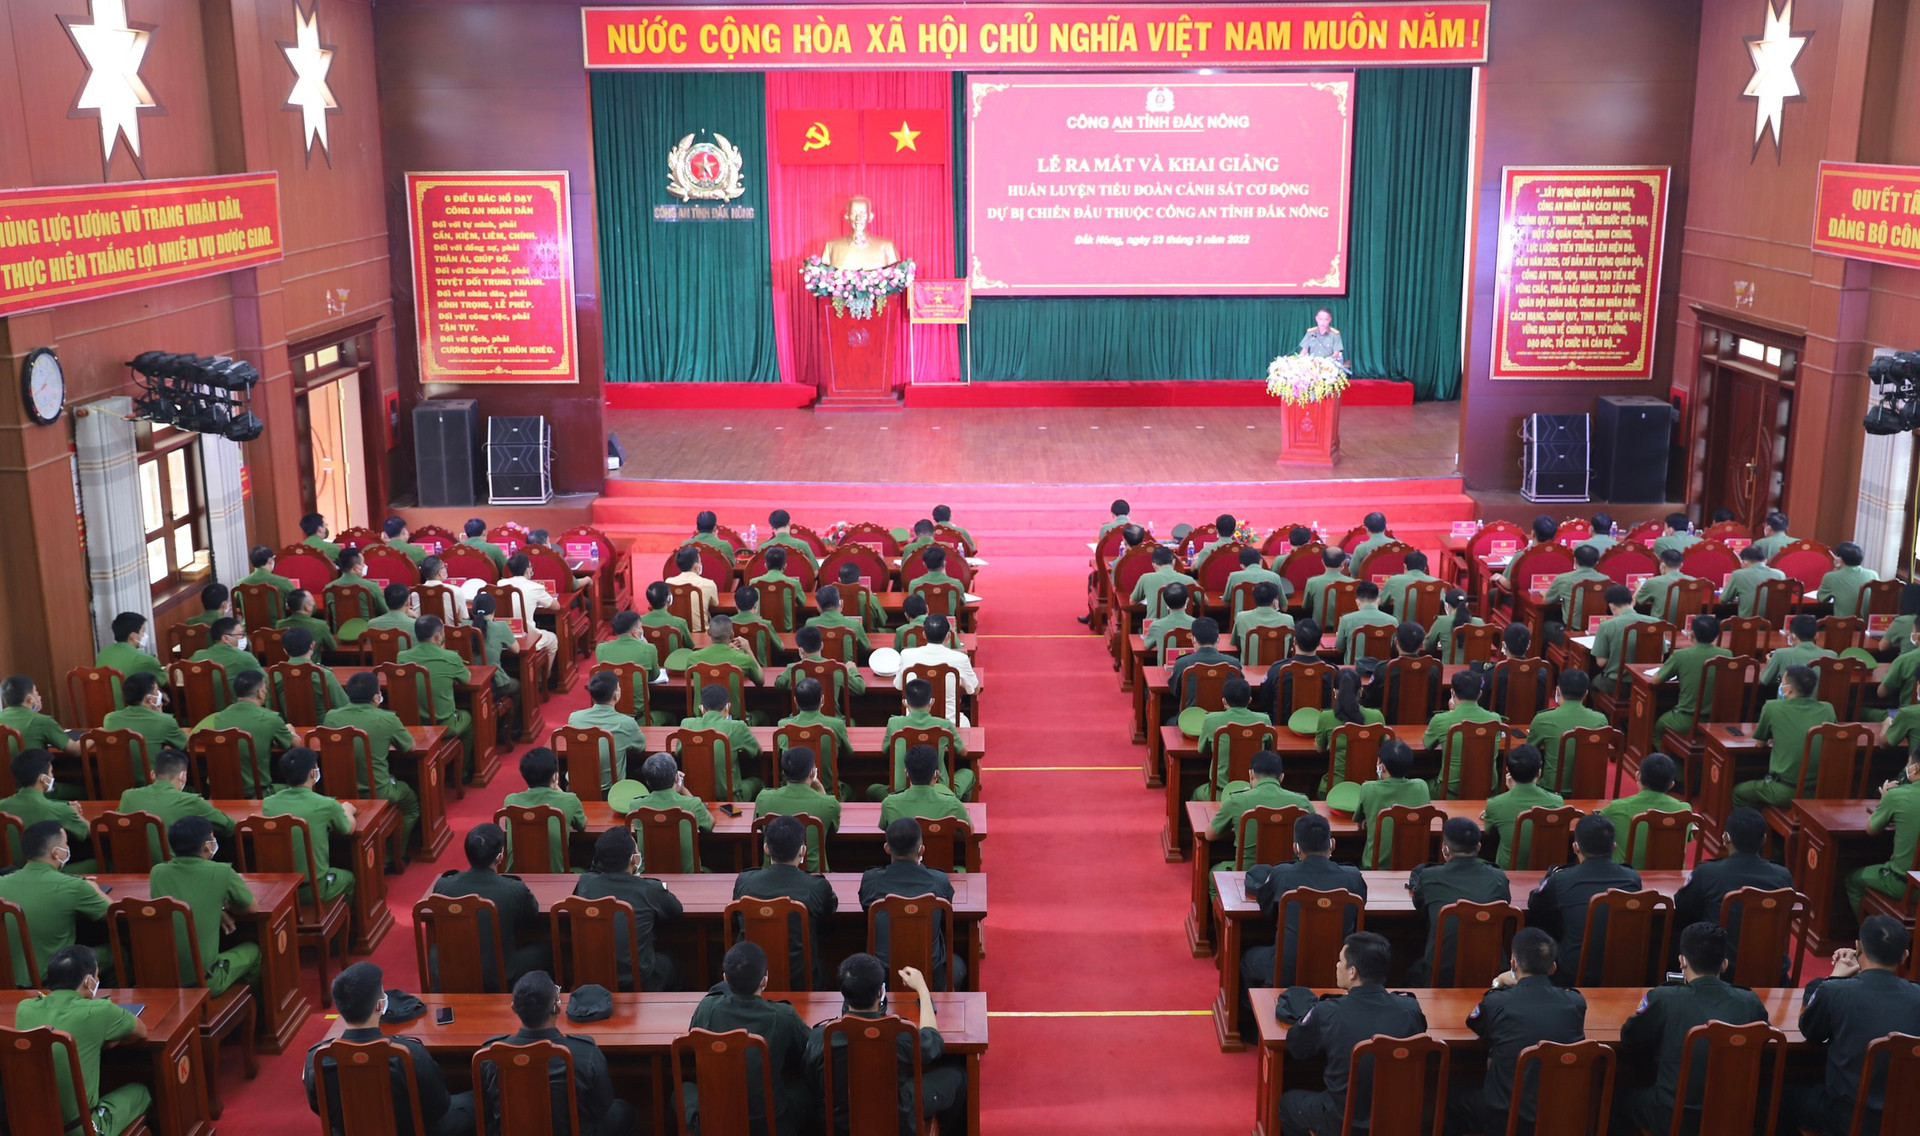 Toàn cảnh buổi lễ ra mắt và khai giảng huấn luyện tiểu đoàn Cảnh sát cơ động dự bị chiến đấu thuộc Công an tỉnh Đắk Nông.